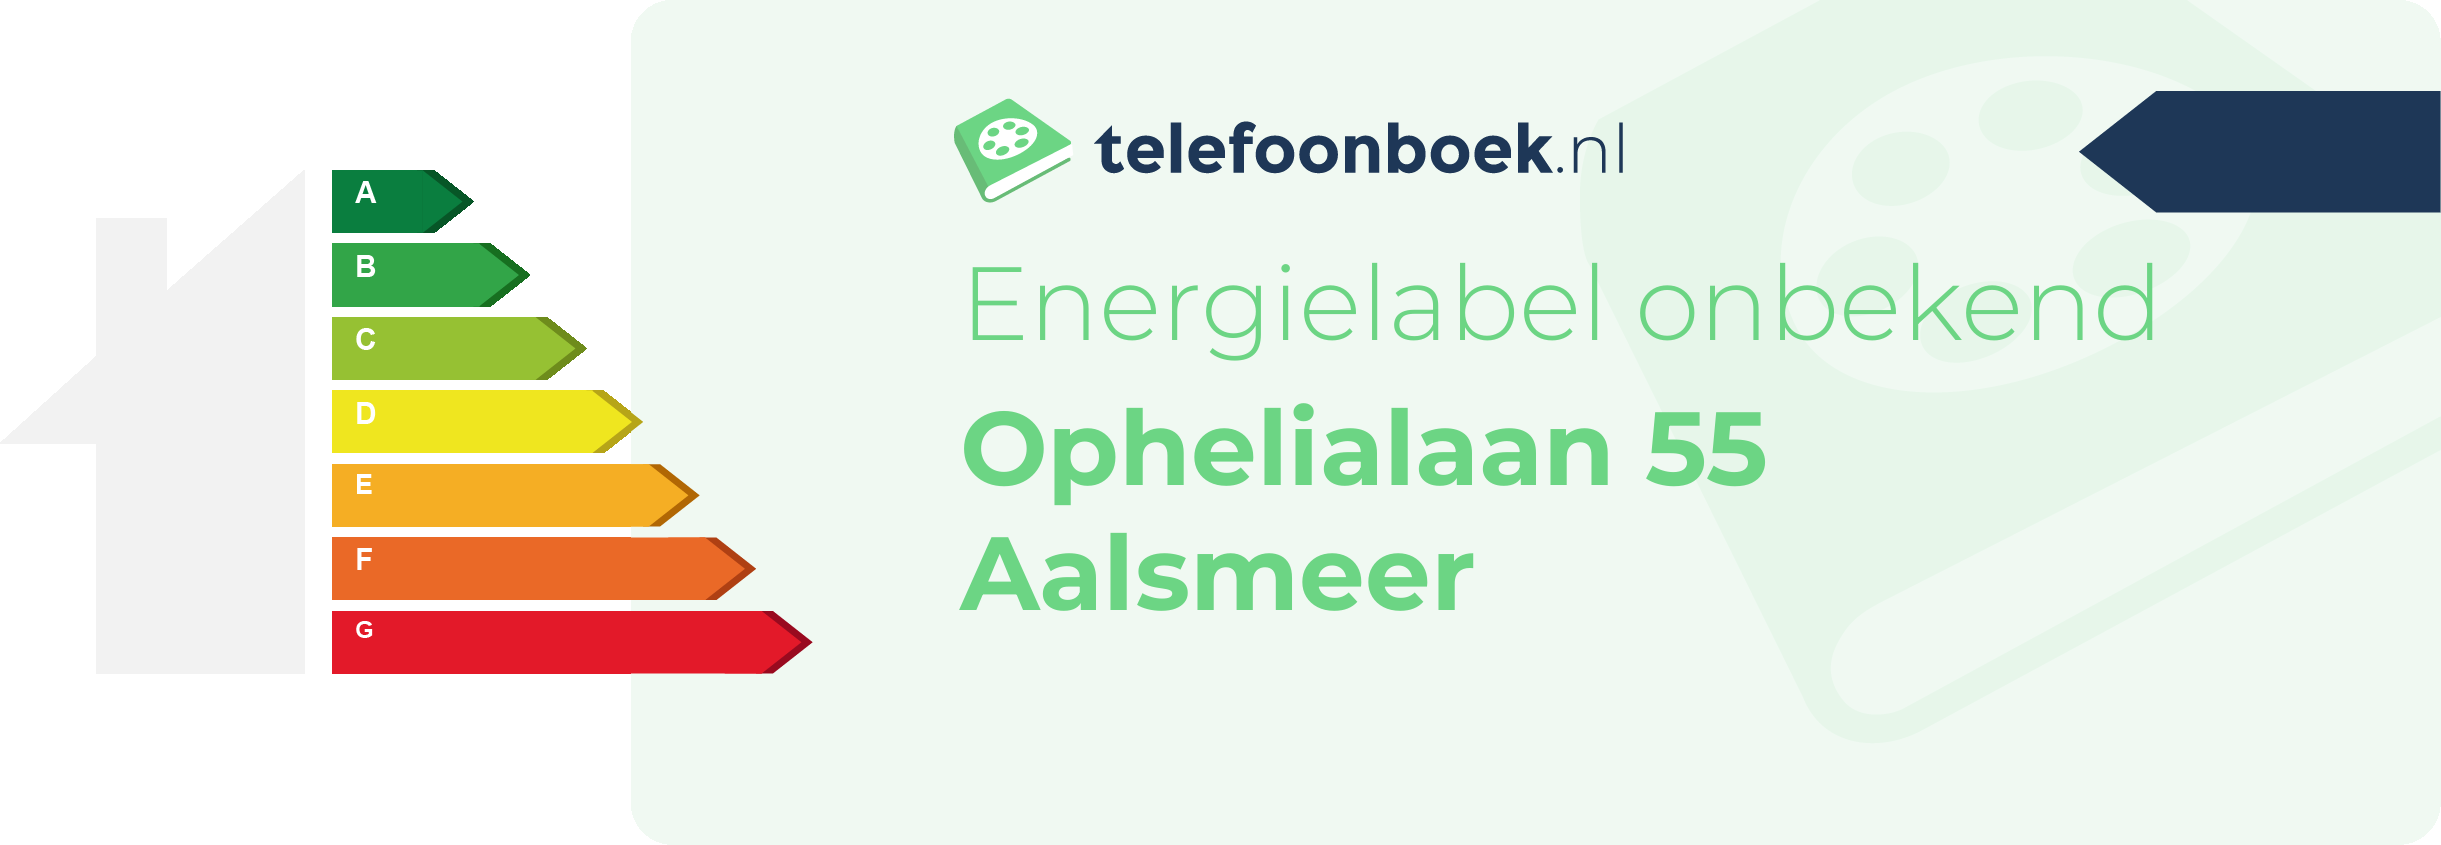 Energielabel Ophelialaan 55 Aalsmeer